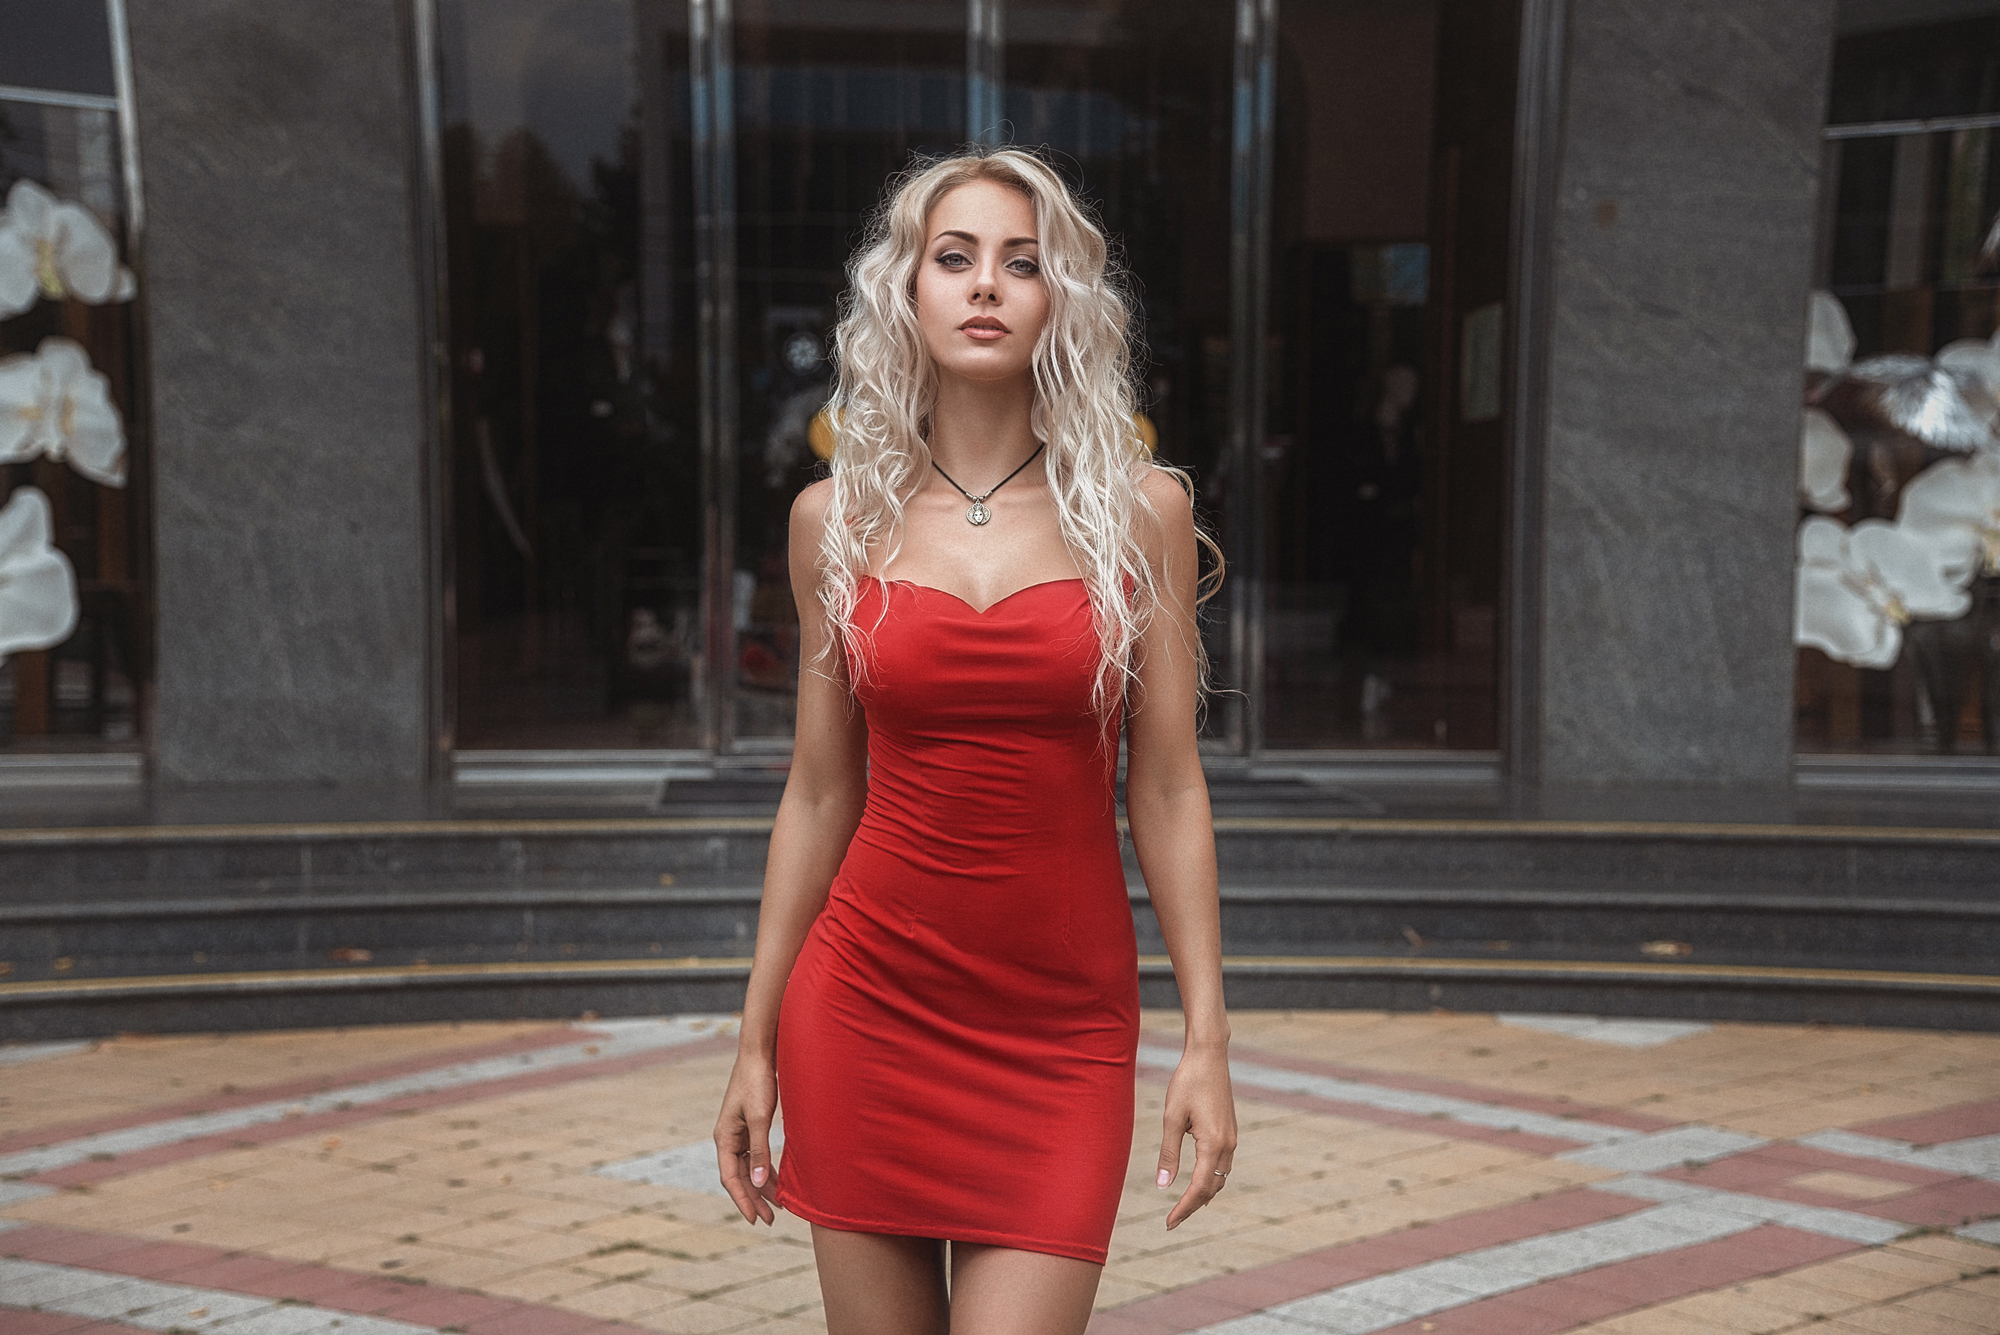 Women Blonde Red Dress Tight Dress Portrait Necklace Women Outdoors Wavy Hair Galyaev Evgeniy